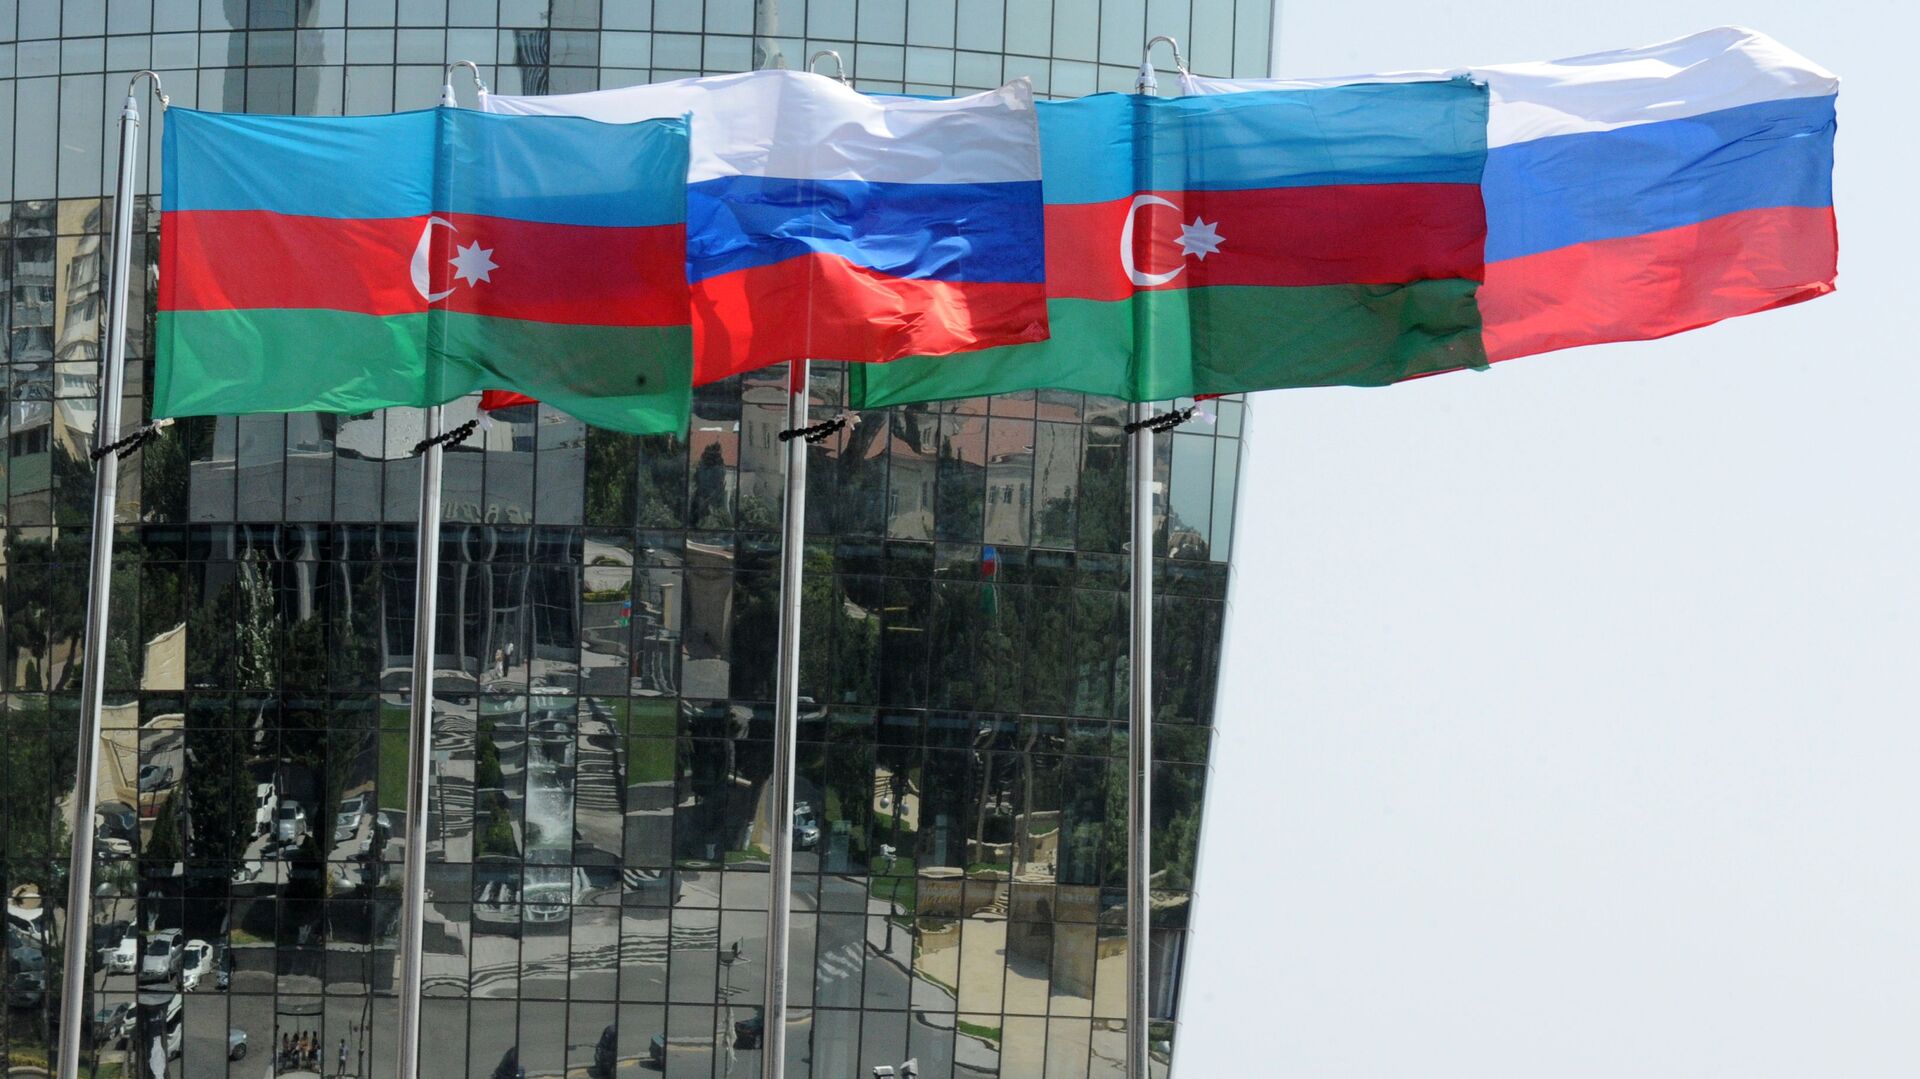 Национальные флаги России и Азербайджана на фоне фасада одной из башен Башни Пламени (Flame Towers) в Баку - Sputnik Азербайджан, 1920, 09.02.2021